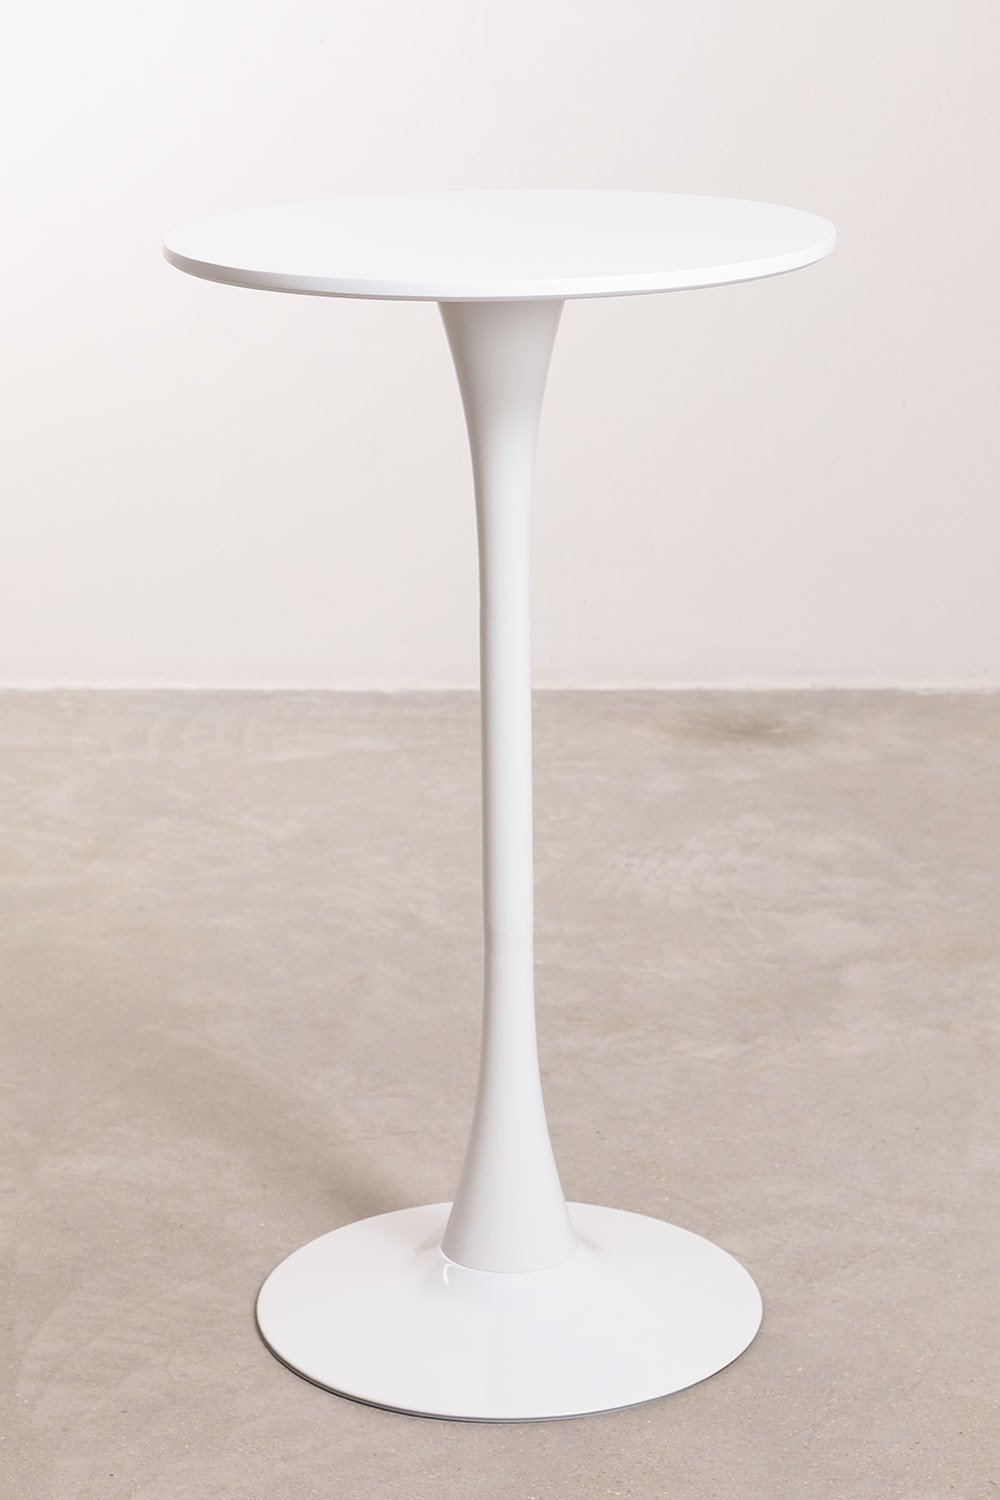 Ronde hoge tafel in MDF en metaal (Ø60 cm) Ivet Style, galerij beeld 2